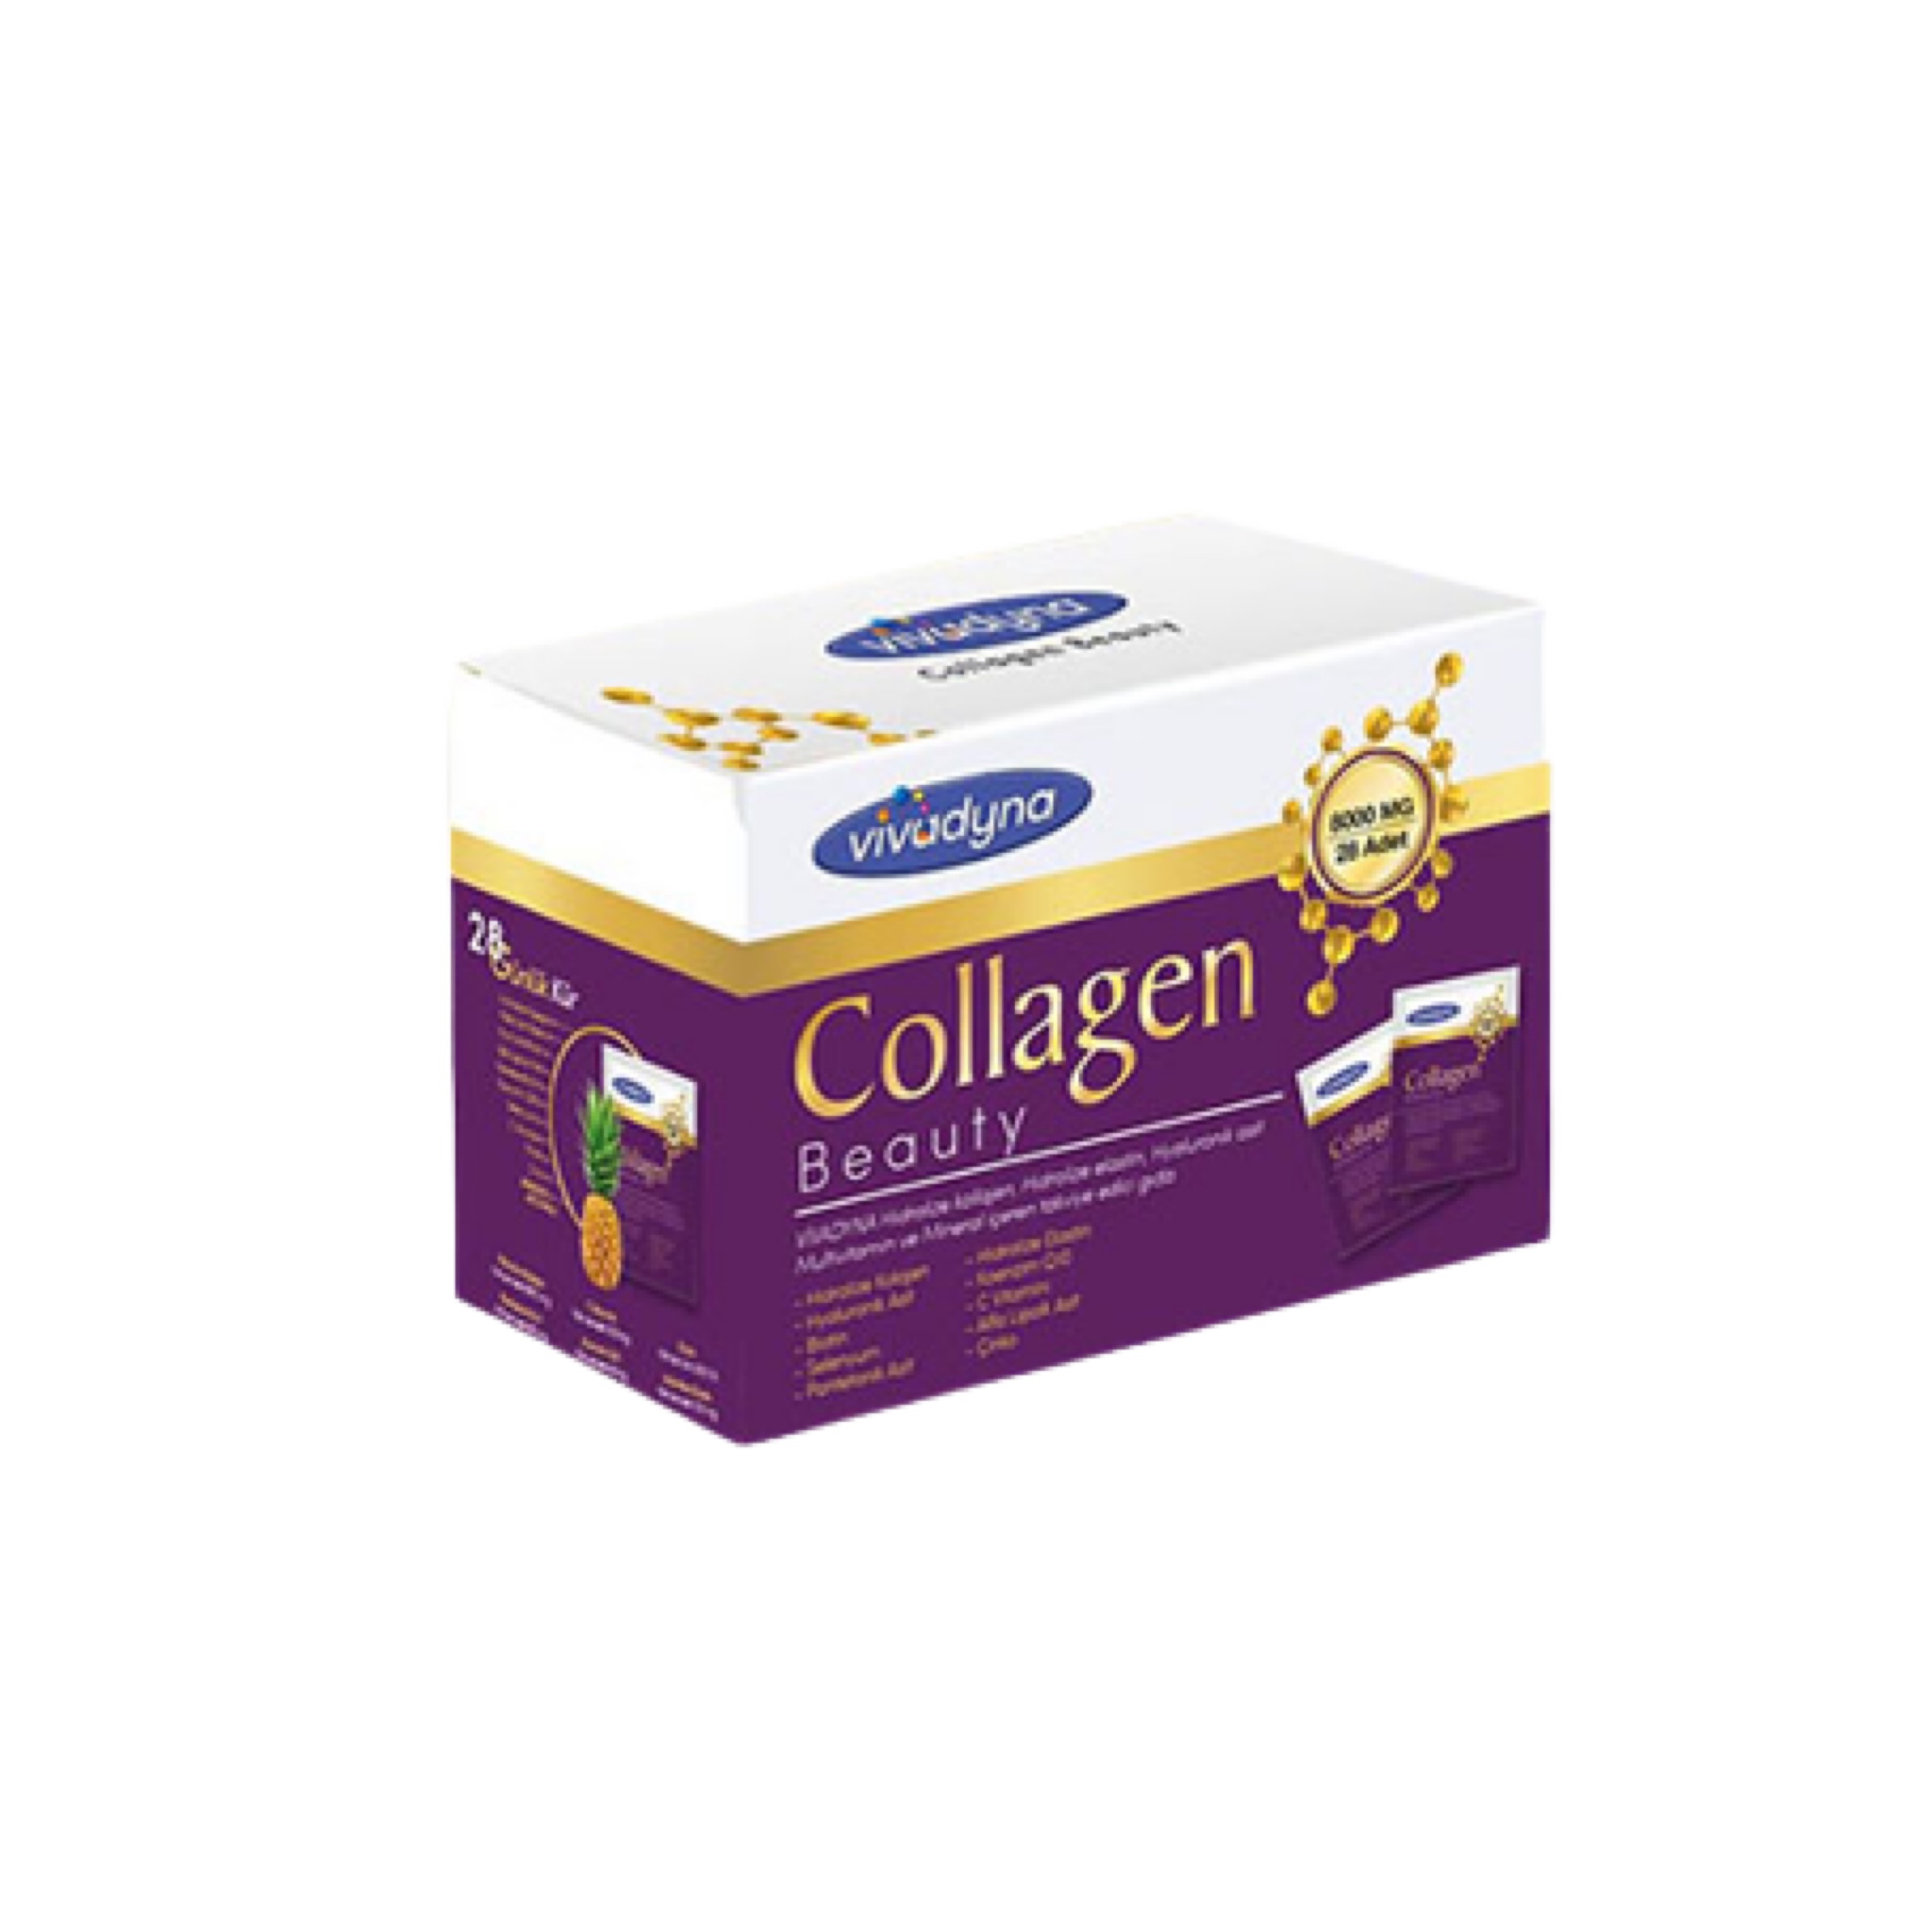 Collagen Beauty Vivadyna 28 paket